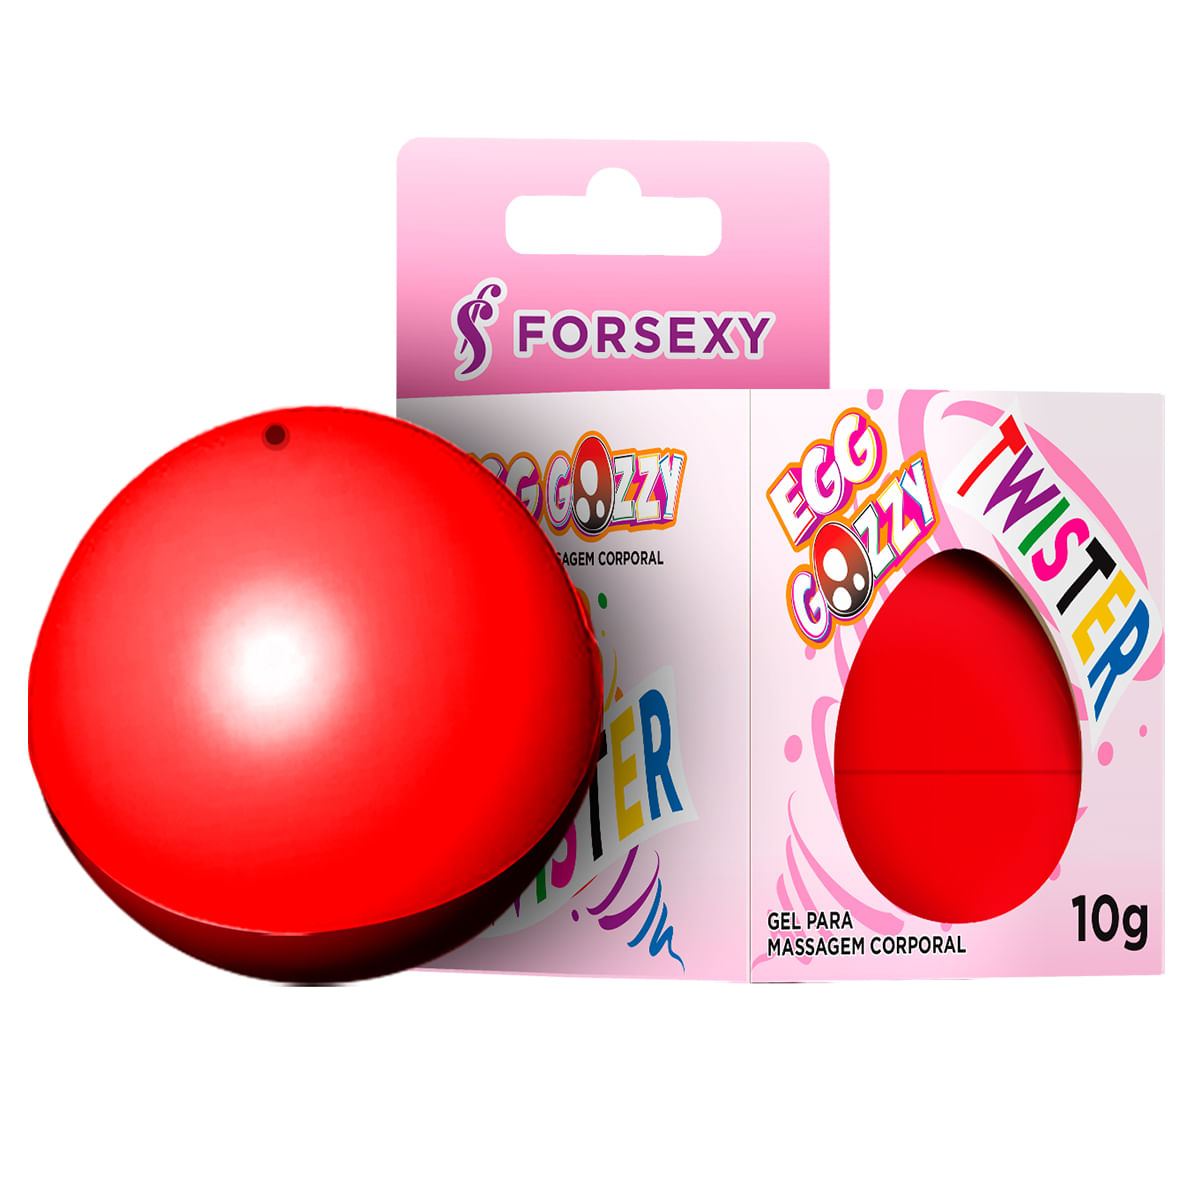 Egg Gozzy Twister Gel Excitante Feminino Esquenta, Refresca e Eletric com 10g For Sexy